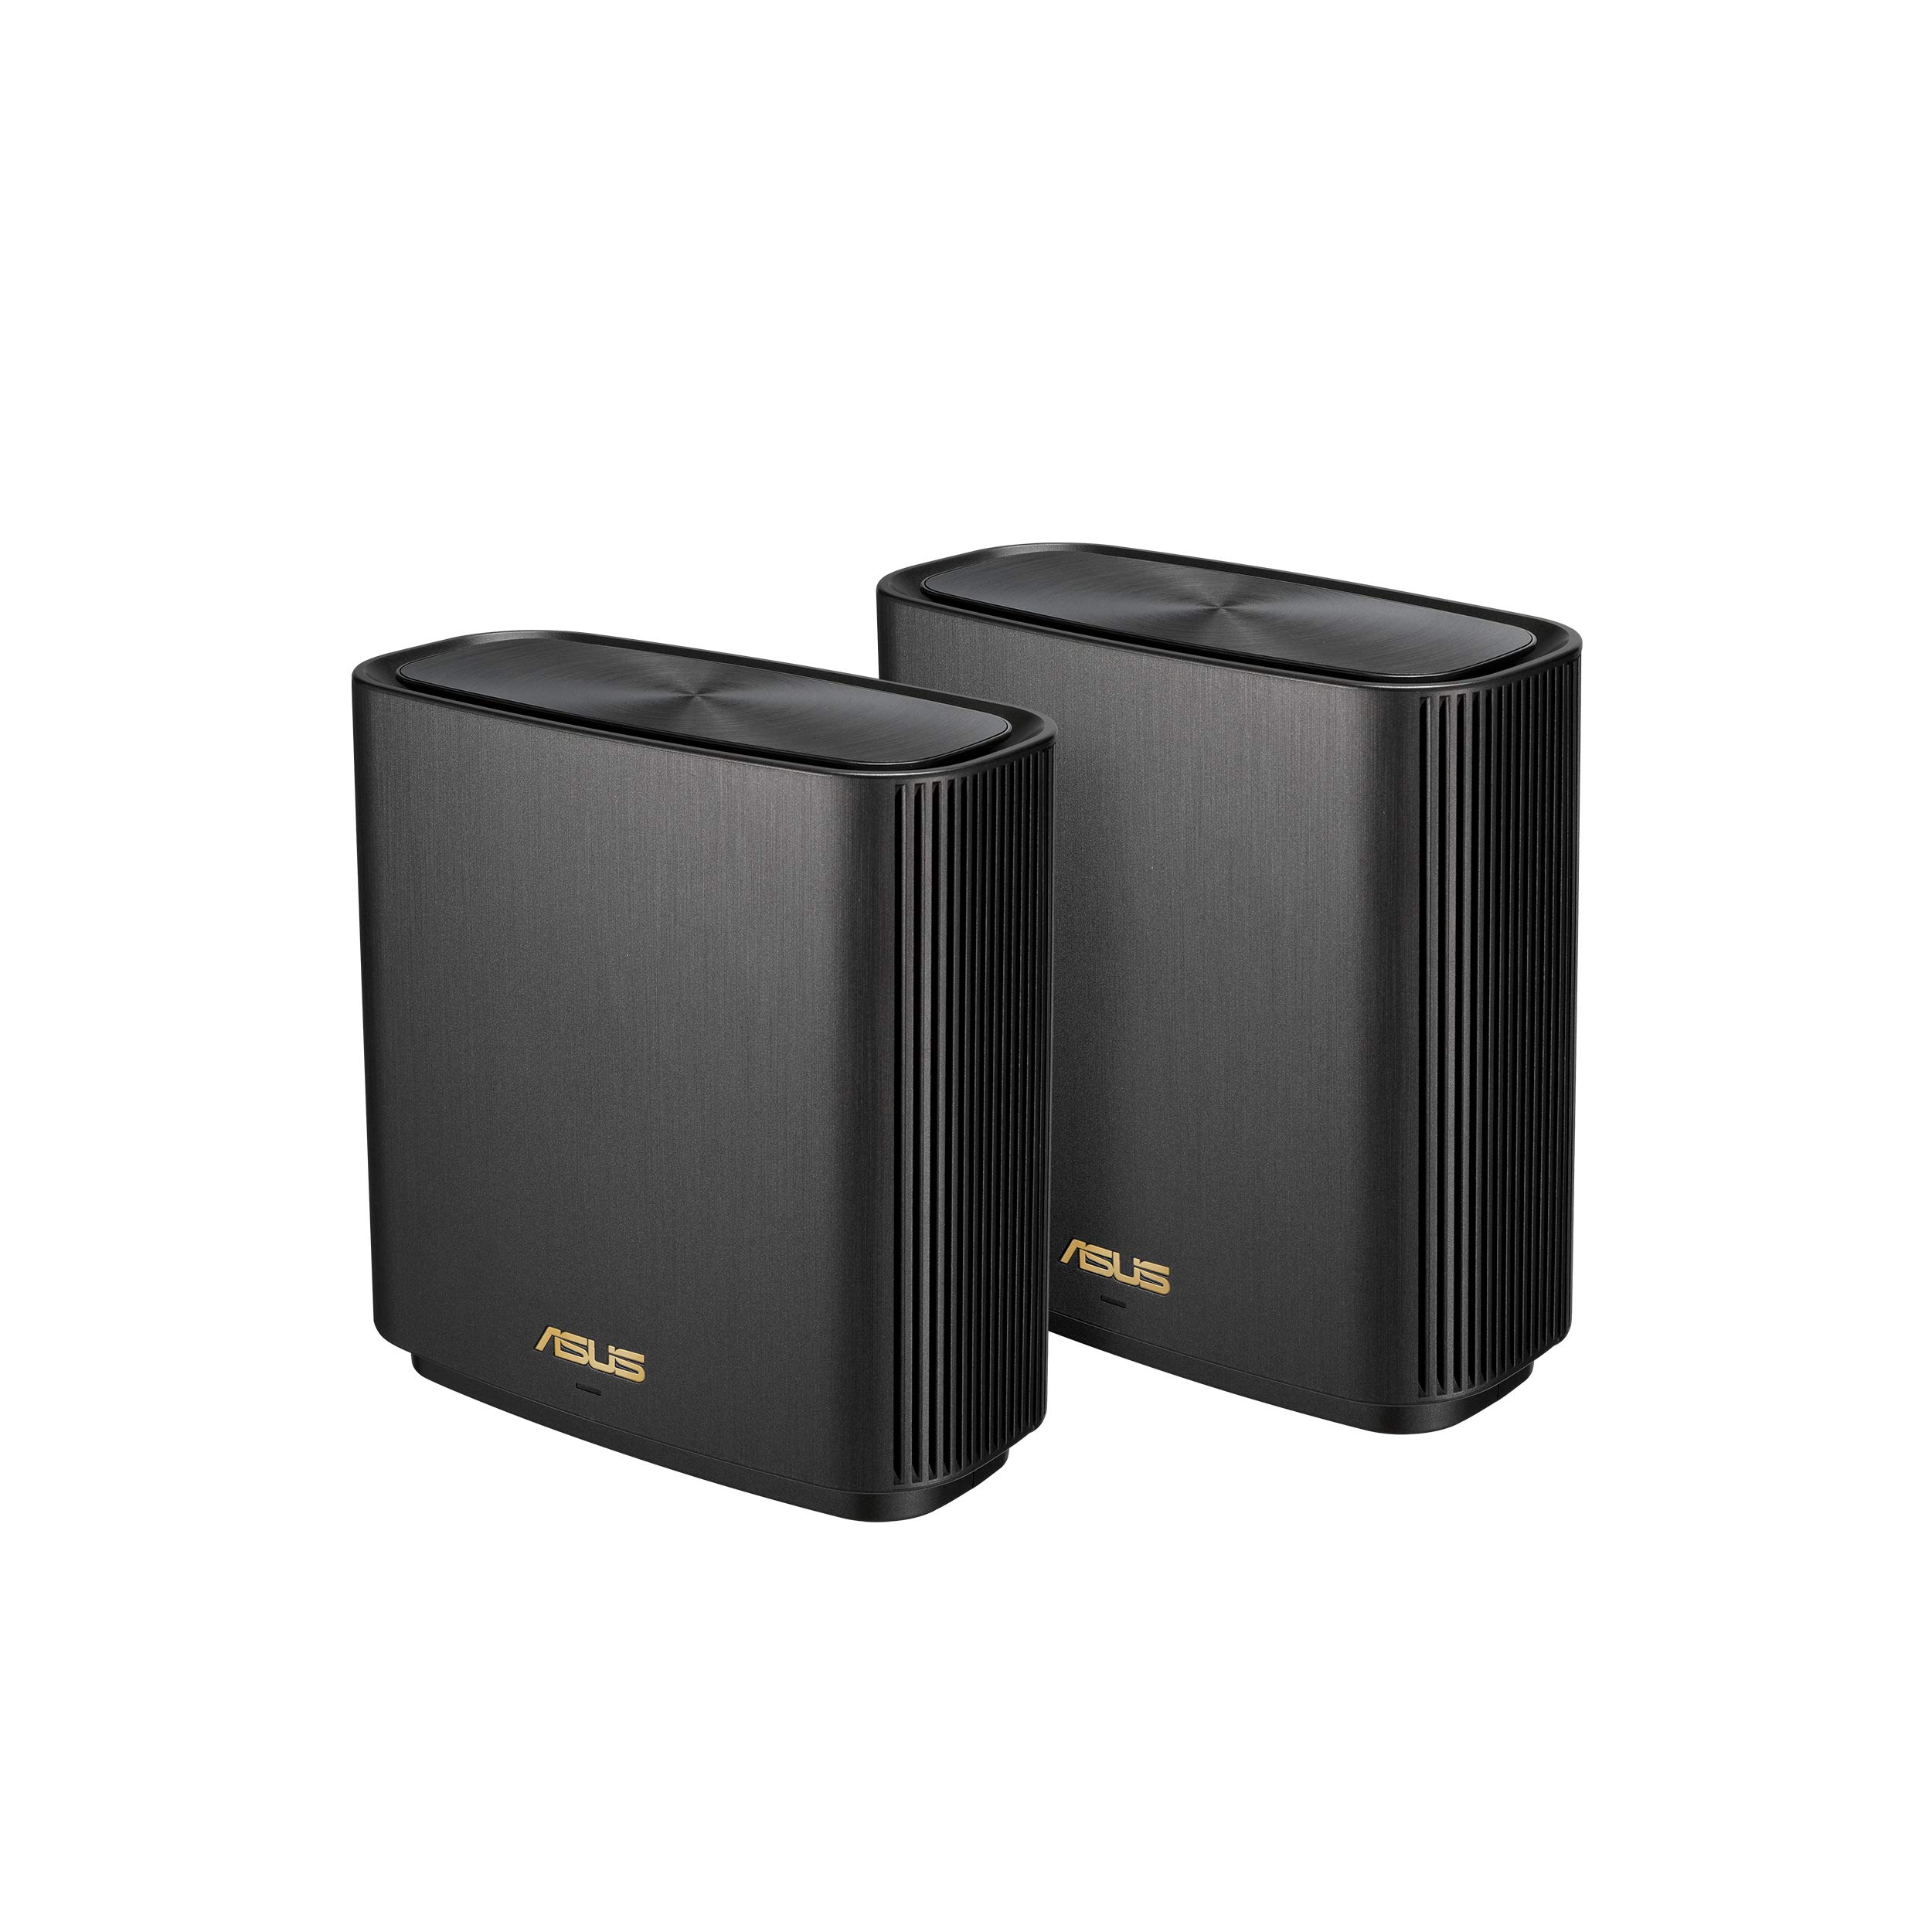 2-Pack ASUS ZenWiFi AX6600 Tri-Band Mesh WiFi 6 System w/ AiMesh (XT8, Charcoal) $272.90 + Free Shipping